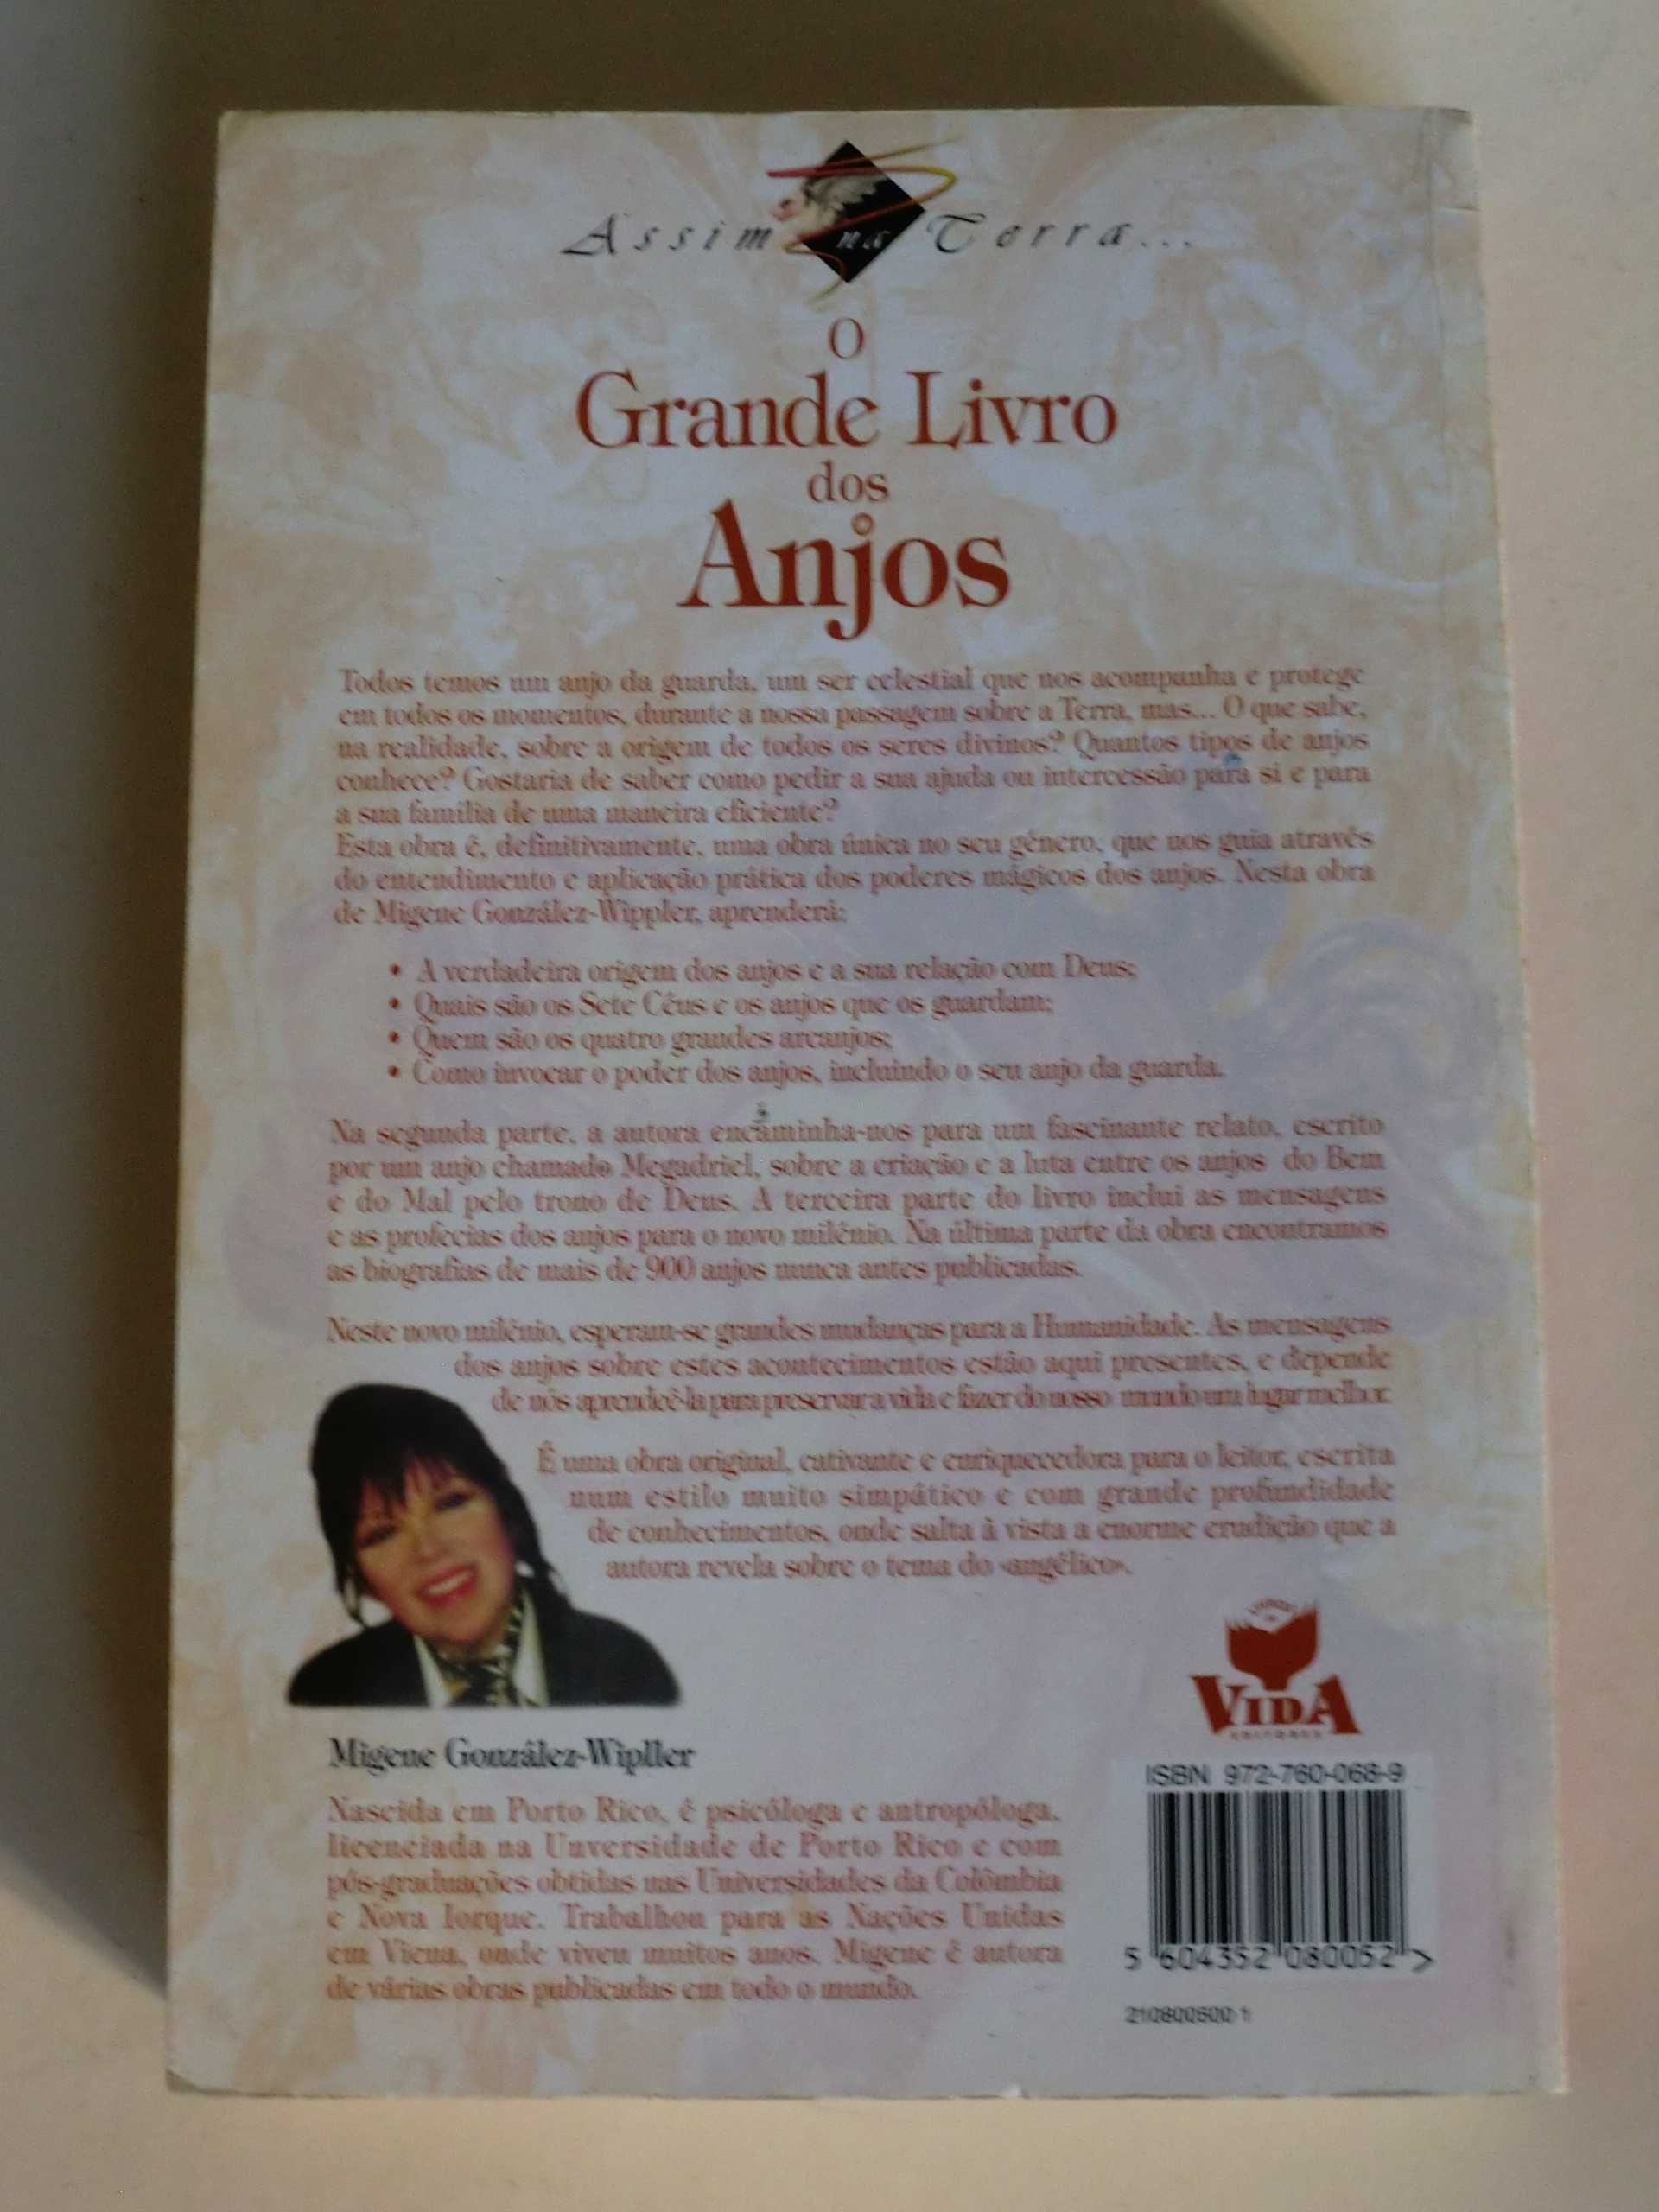 O Grande Livros dos Anjos
de Migene González-Wippler